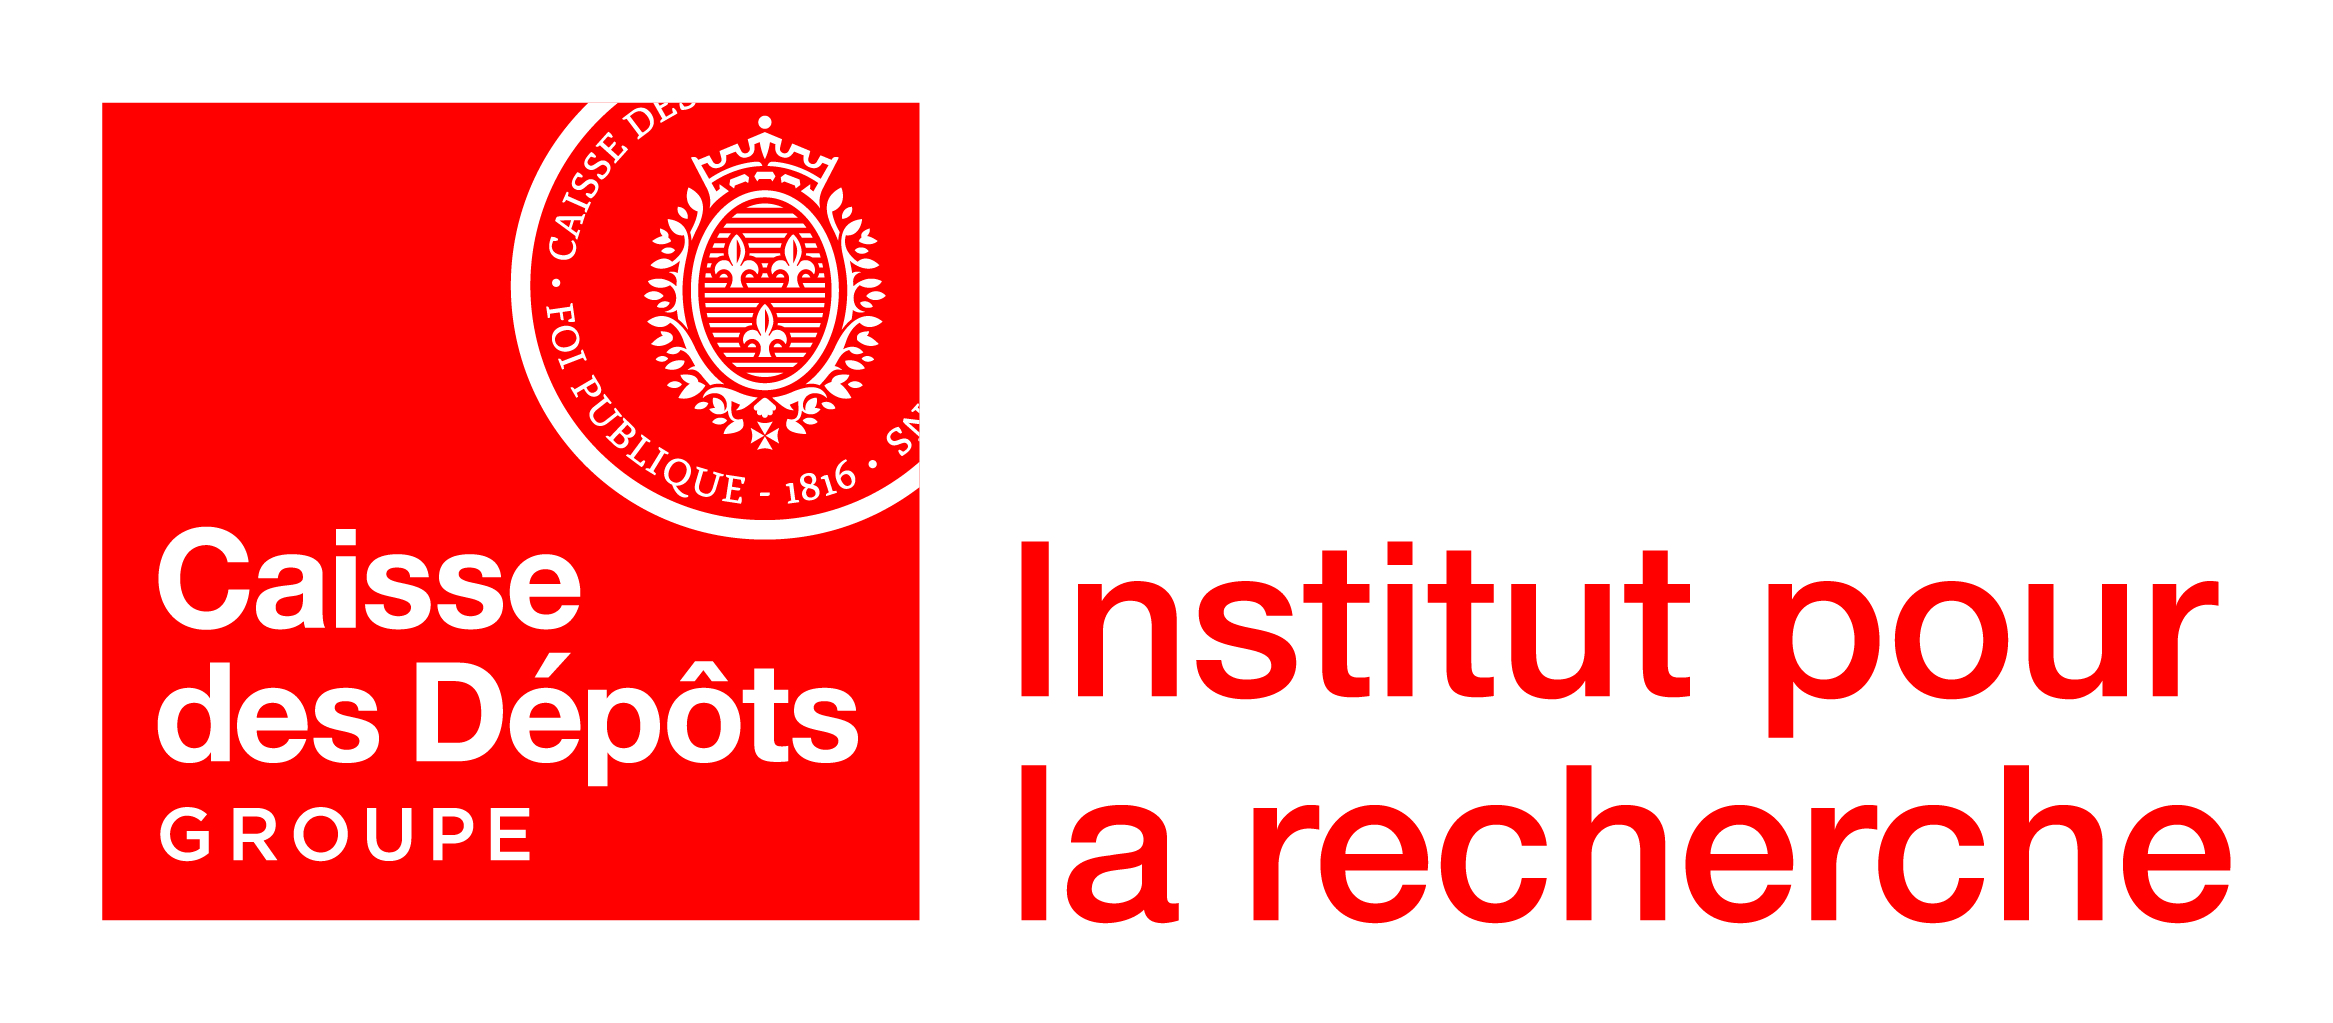 Logo Institut pour la recherche Groupe caisse des dépôts